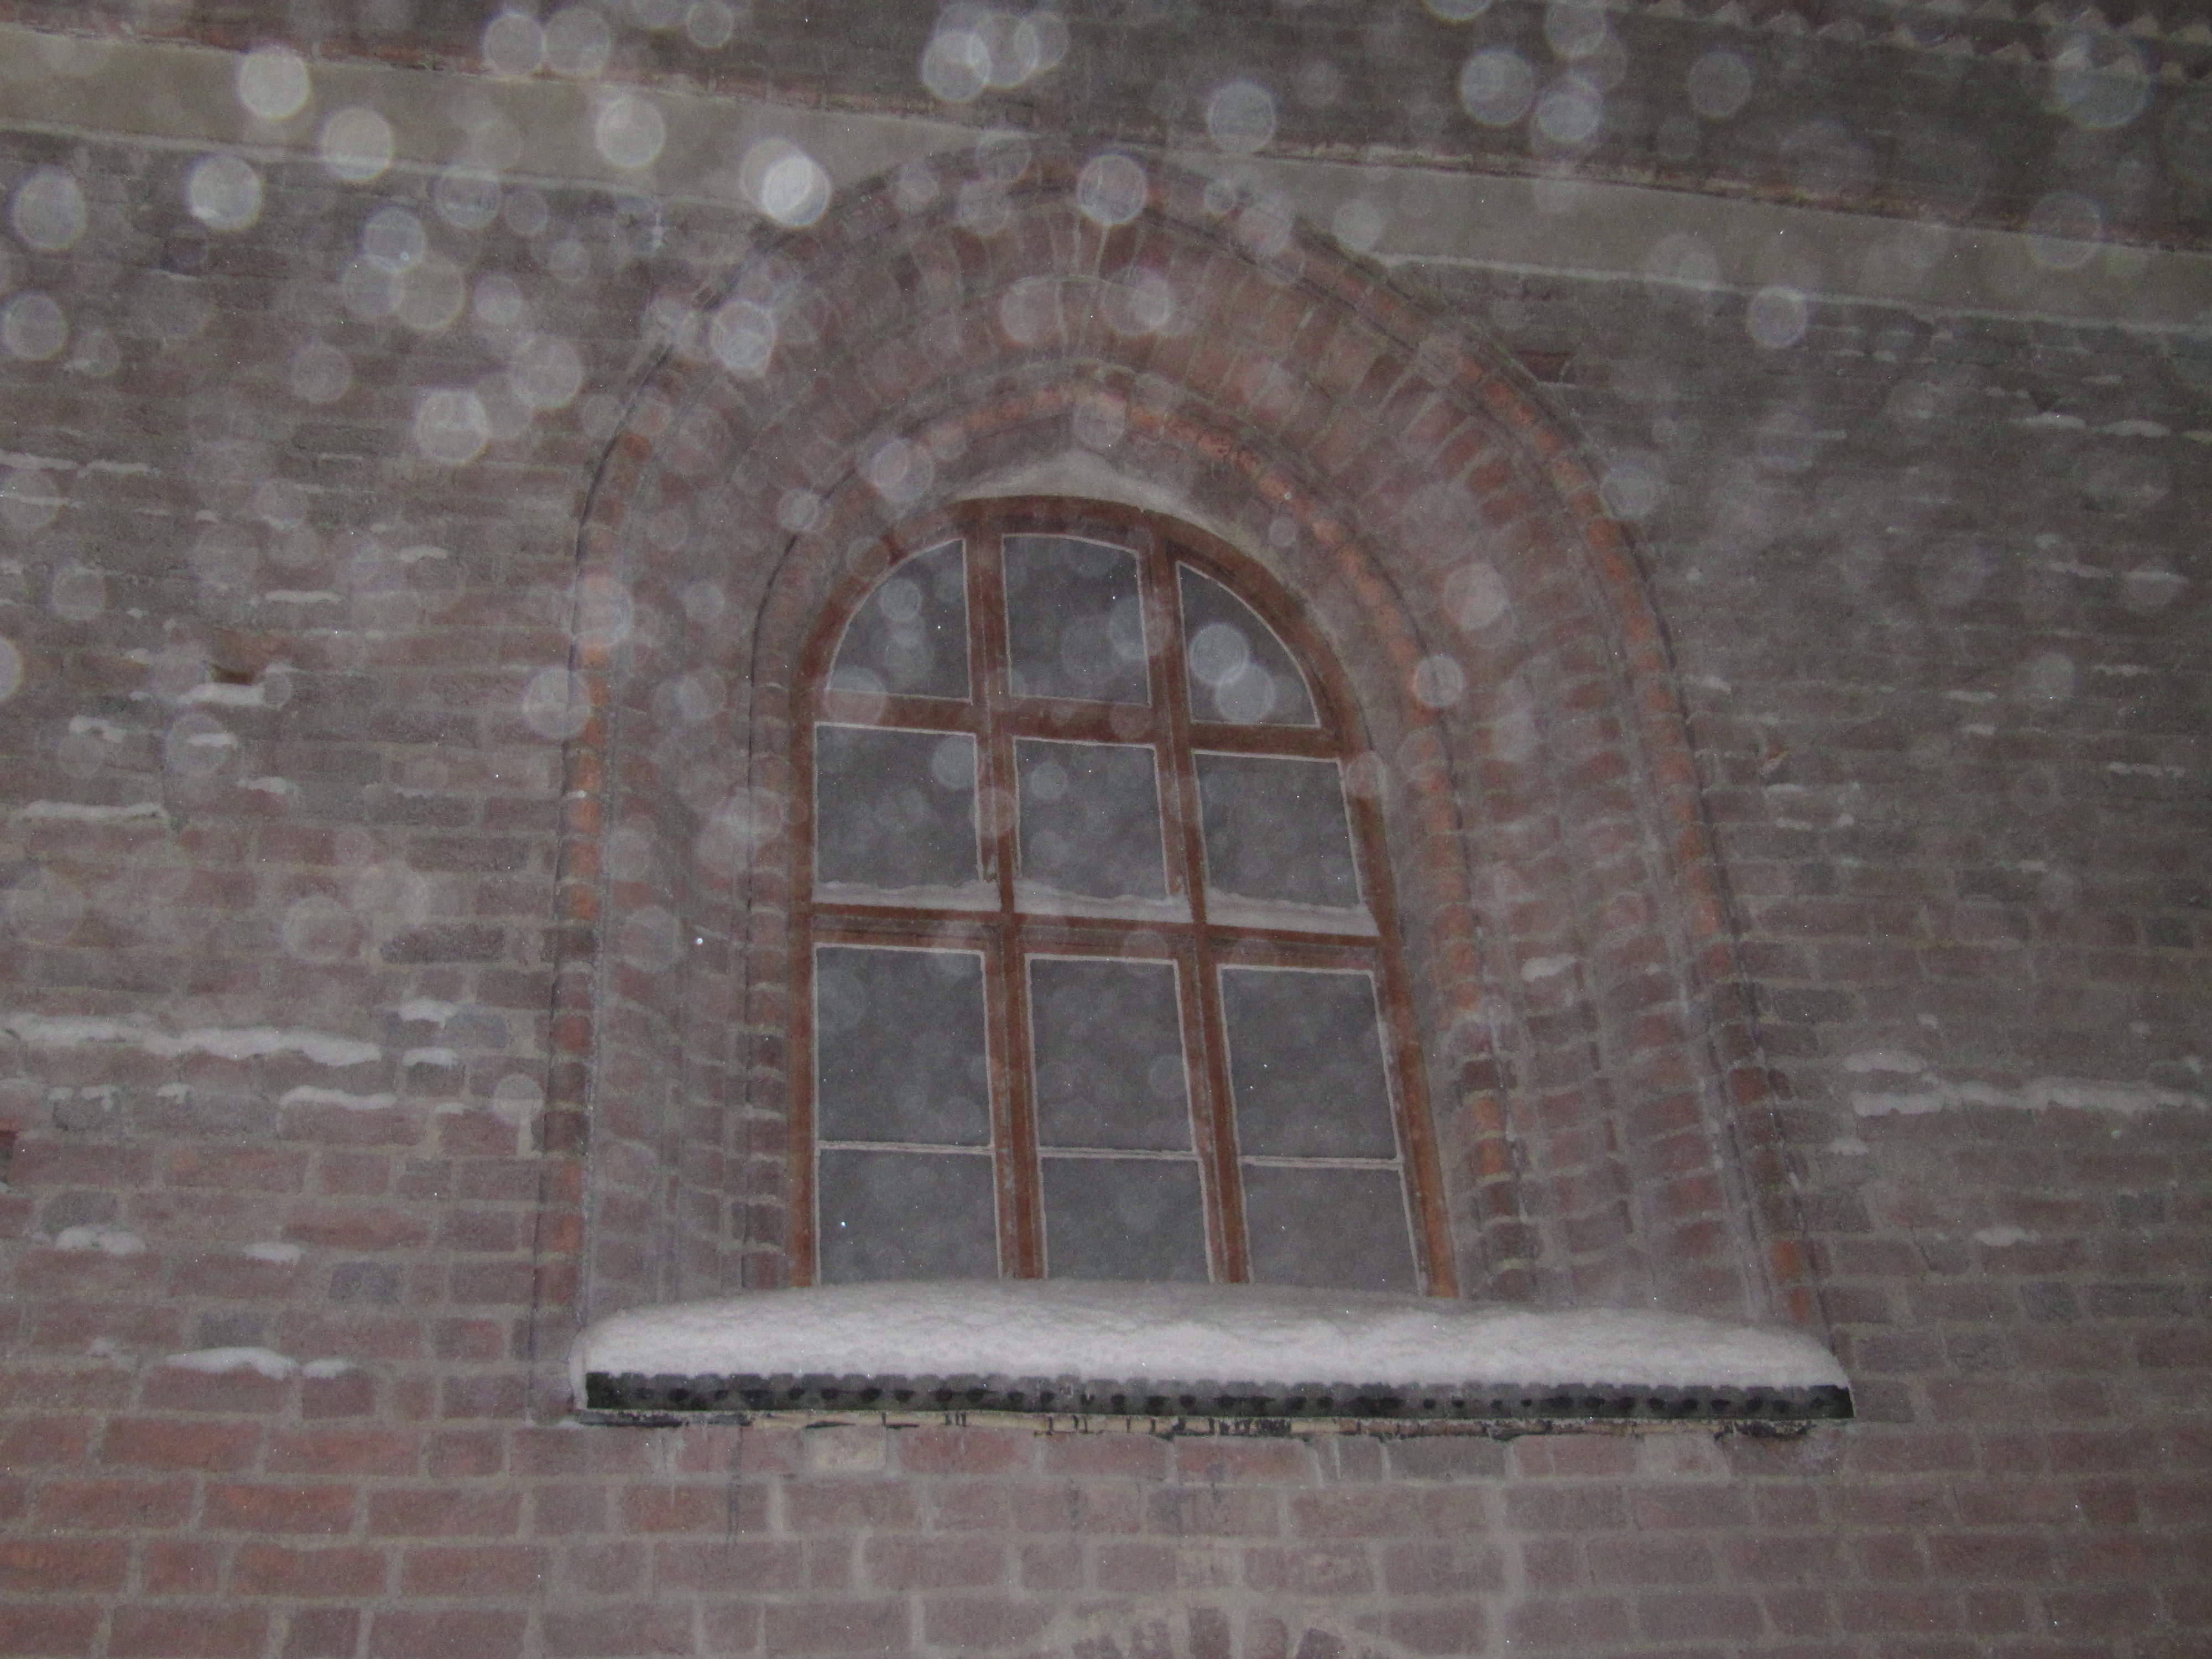 vanhan, tiilestä rakennetun kirkon päätyikkuna ulkoa nähtynä, lumisateessa